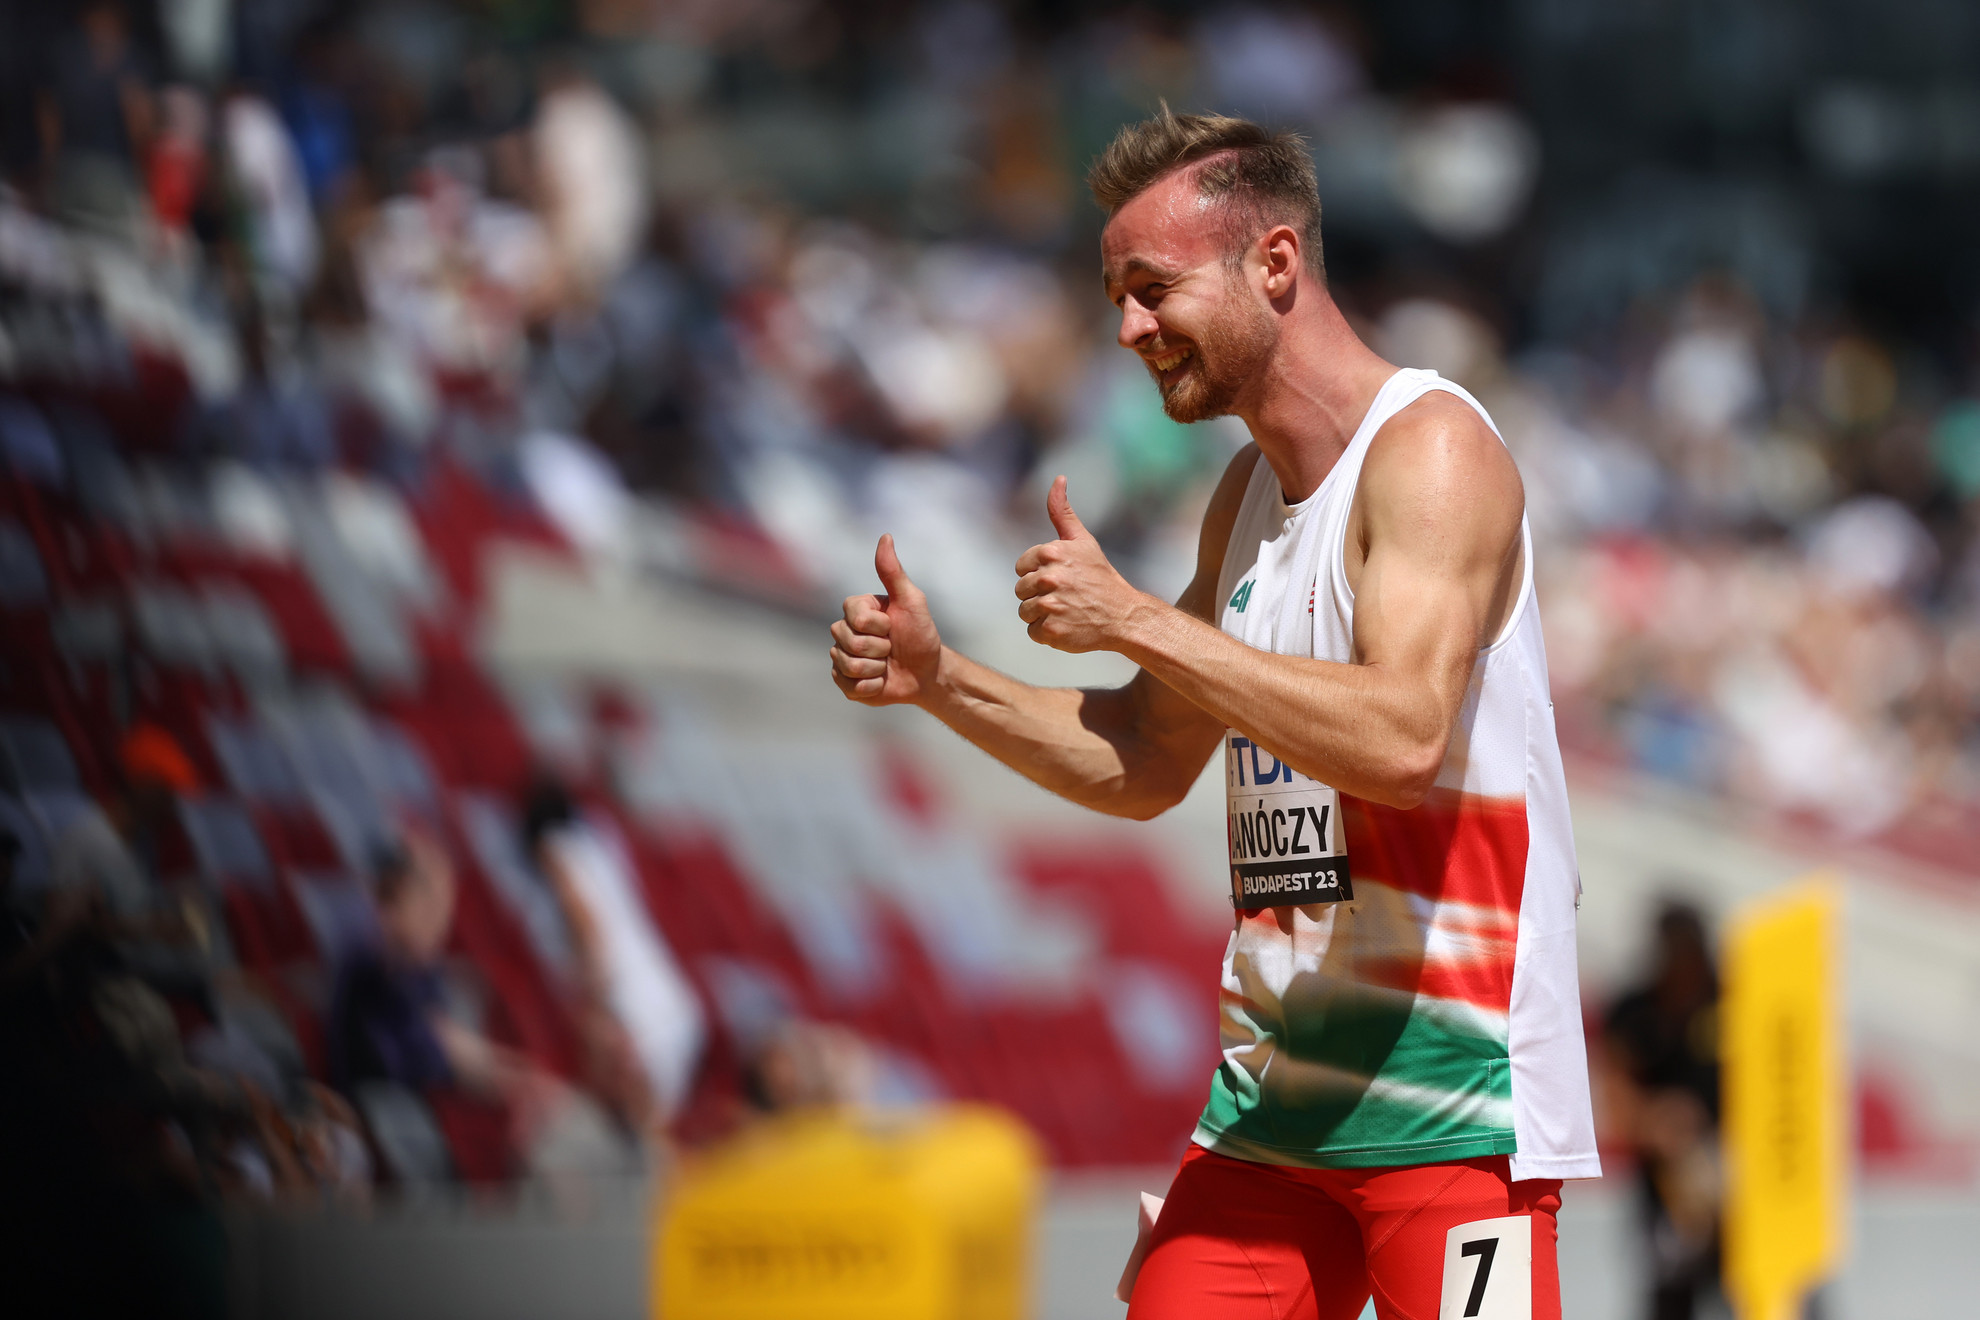 Bánóczy Árpád a férfi 400 méteres gátfutás selejtezőjében